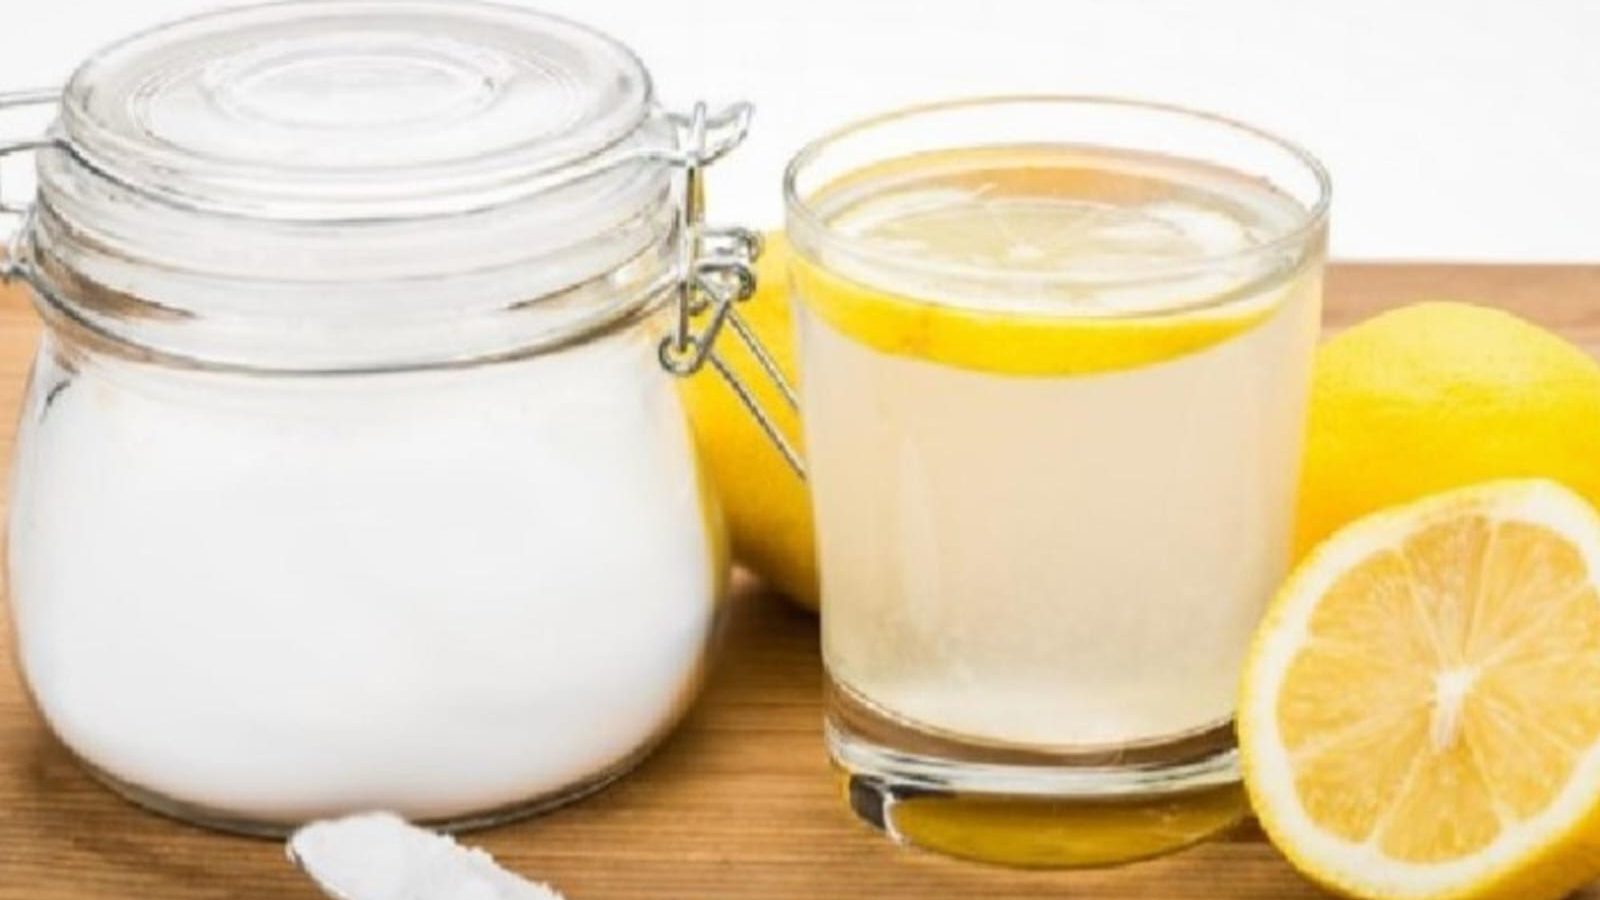 Cuáles son los beneficios del agua con limón y sal que toma Gisele Bündchen